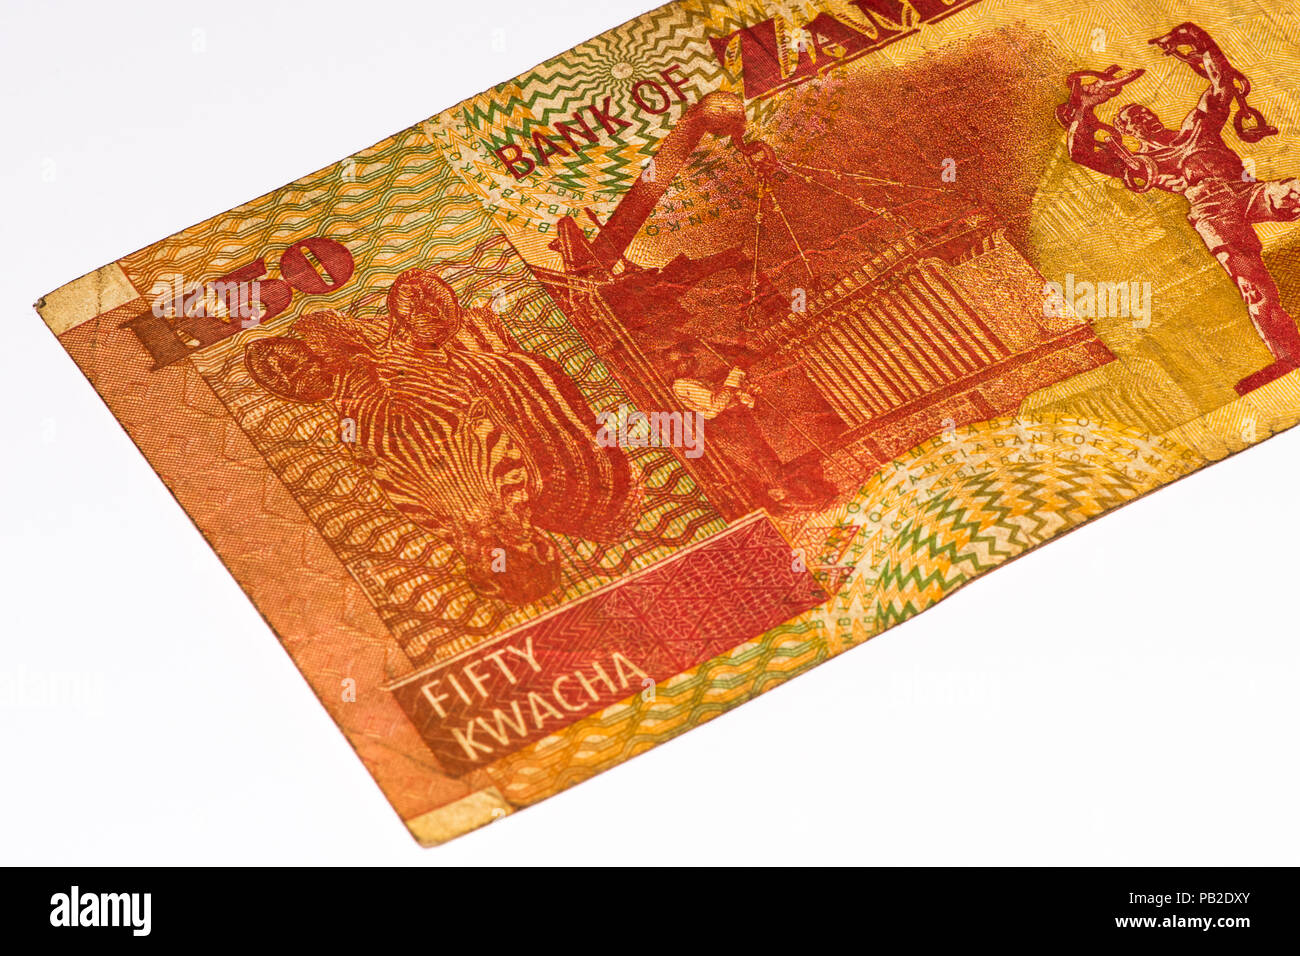 50 Zambian kwach bank note. Zambian kwacha is the national currency of Zambia Stock Photo